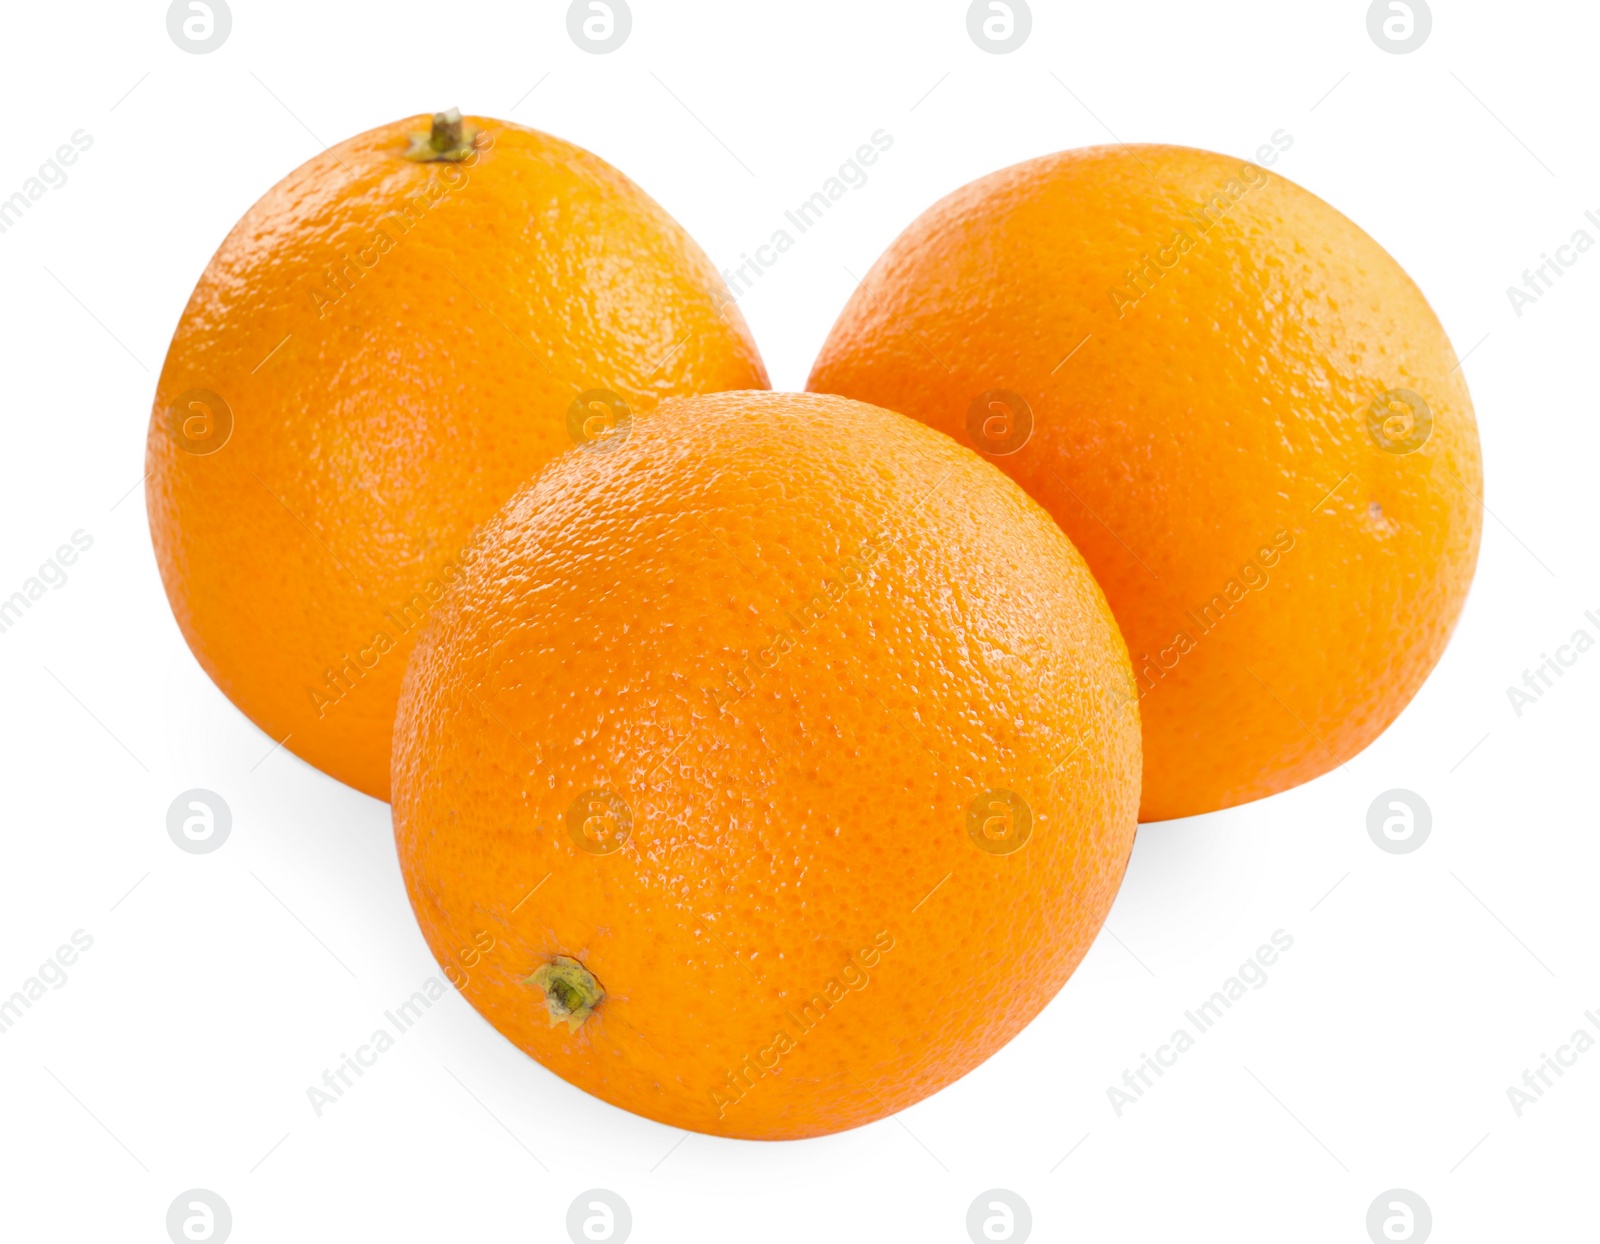 Photo of Three fresh ripe oranges isolated on white